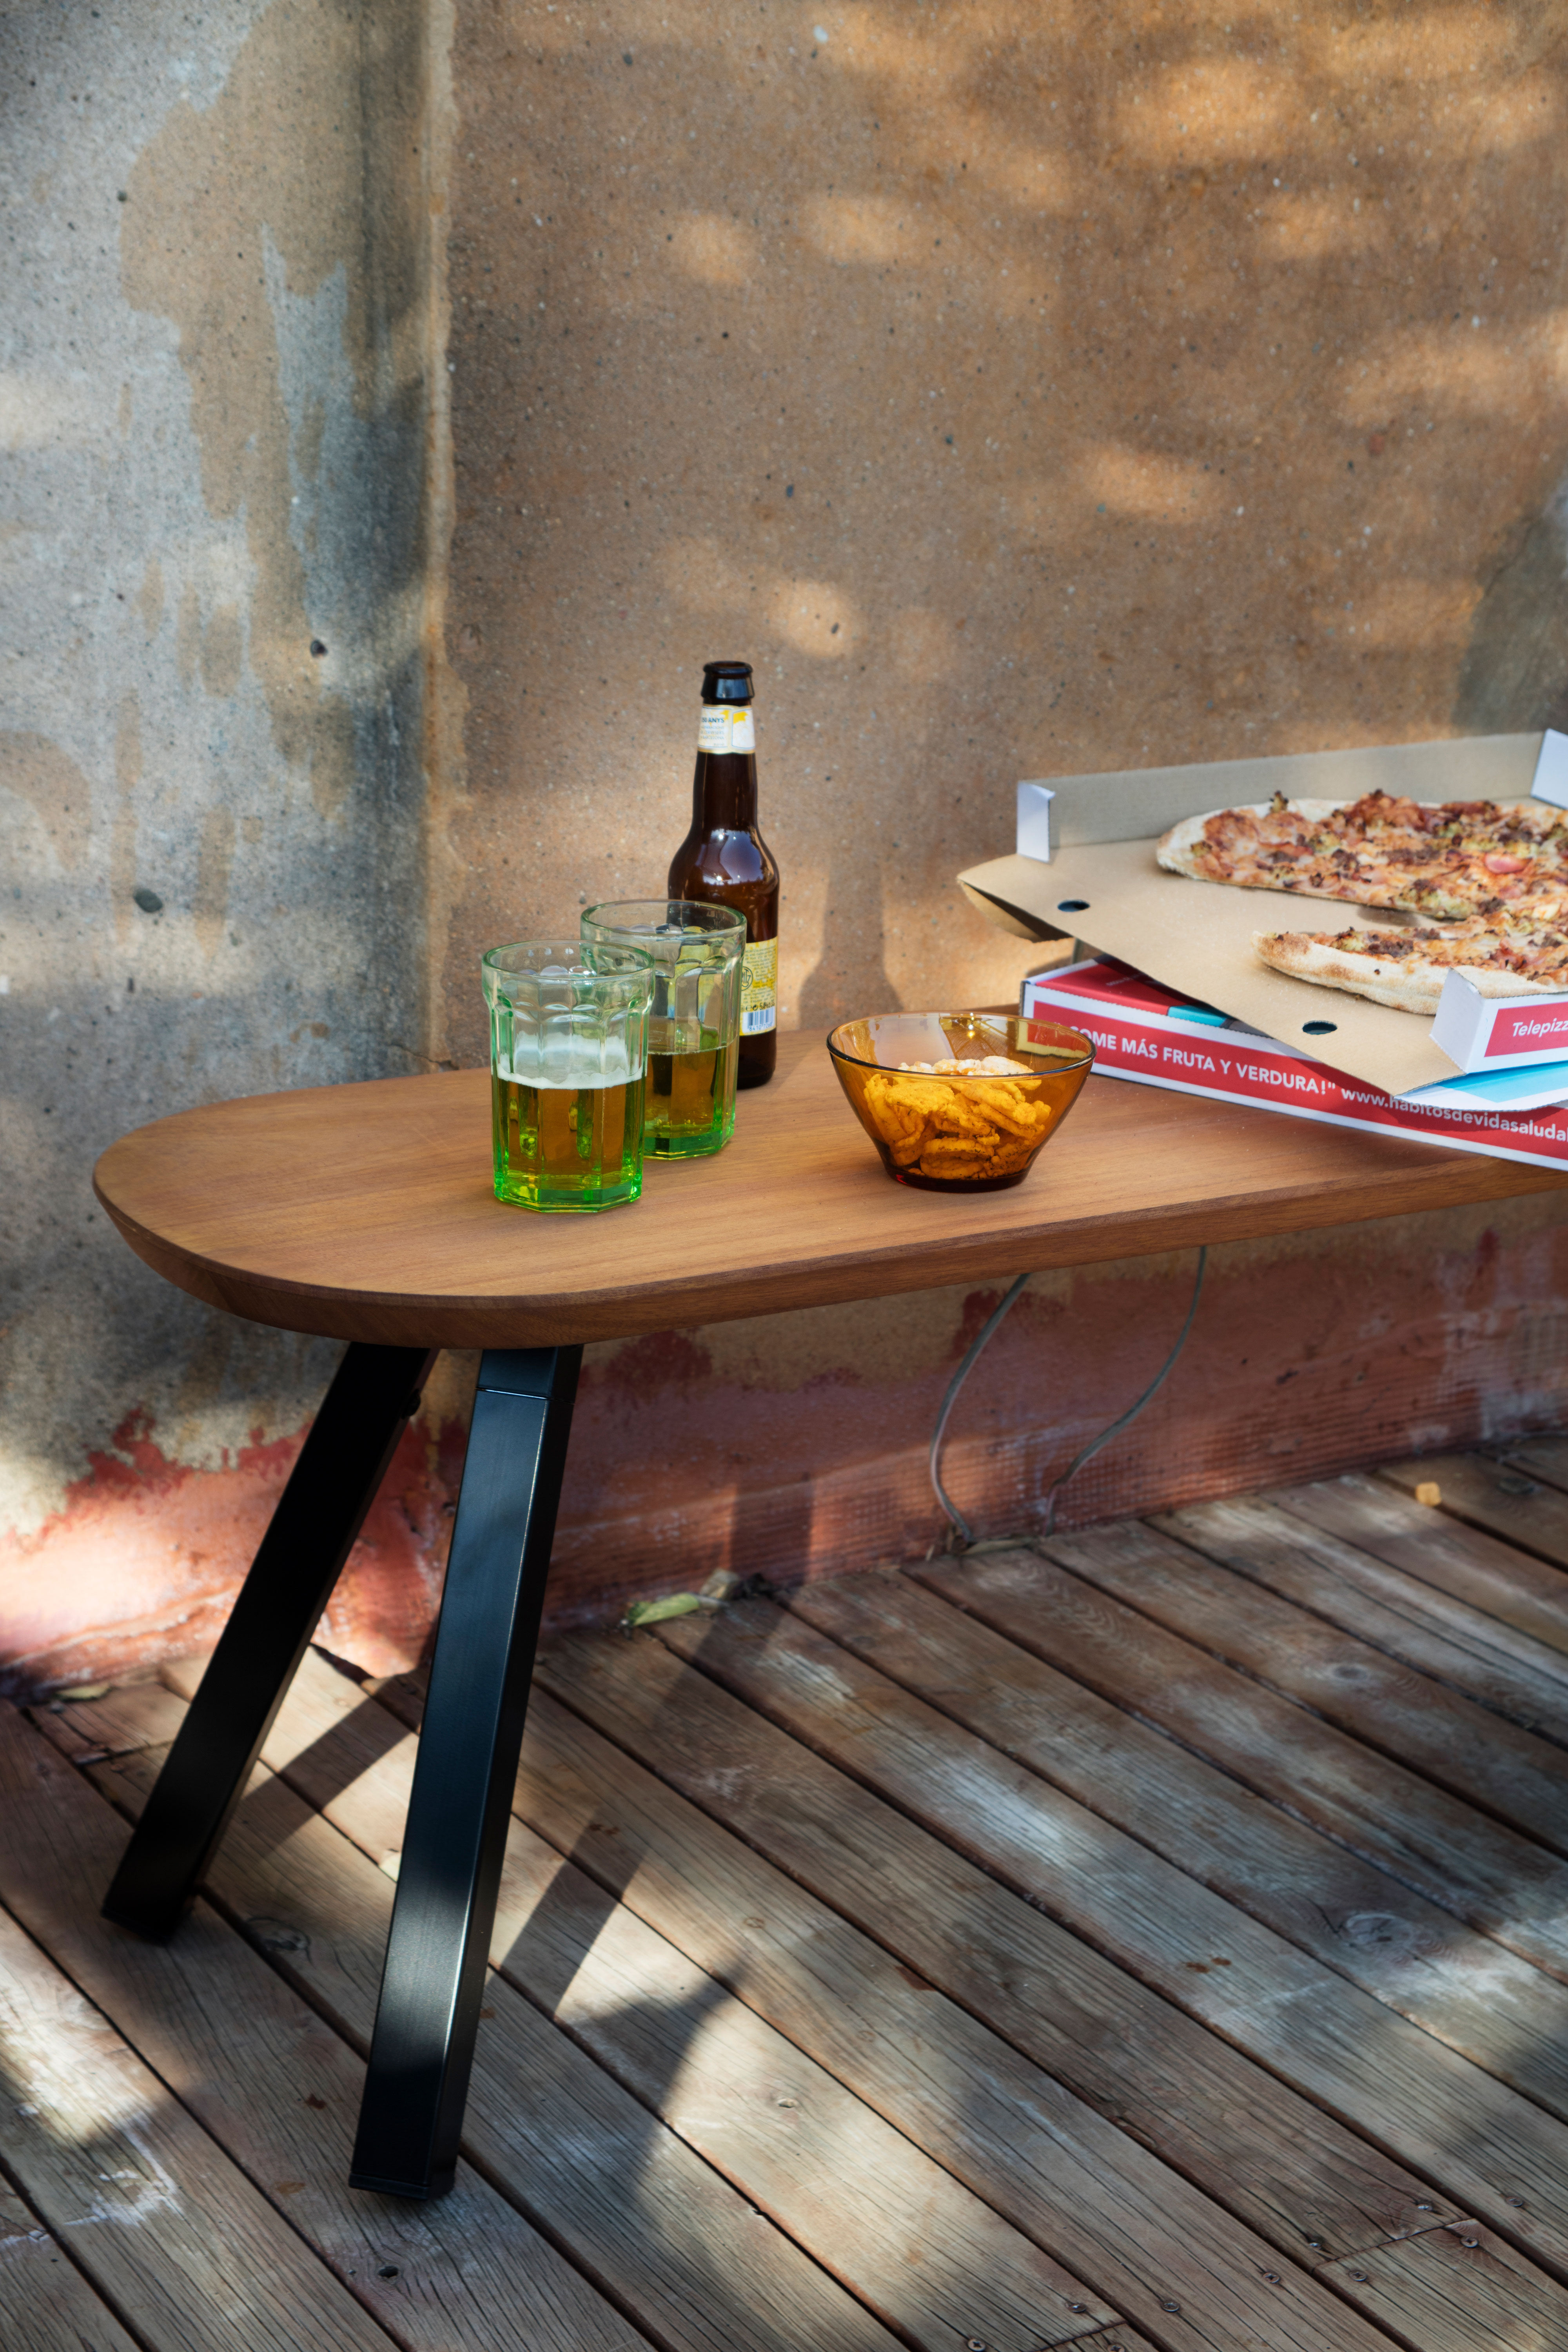 Sitzbank "In- & Outdoor" - Design YM von RS Barcelona